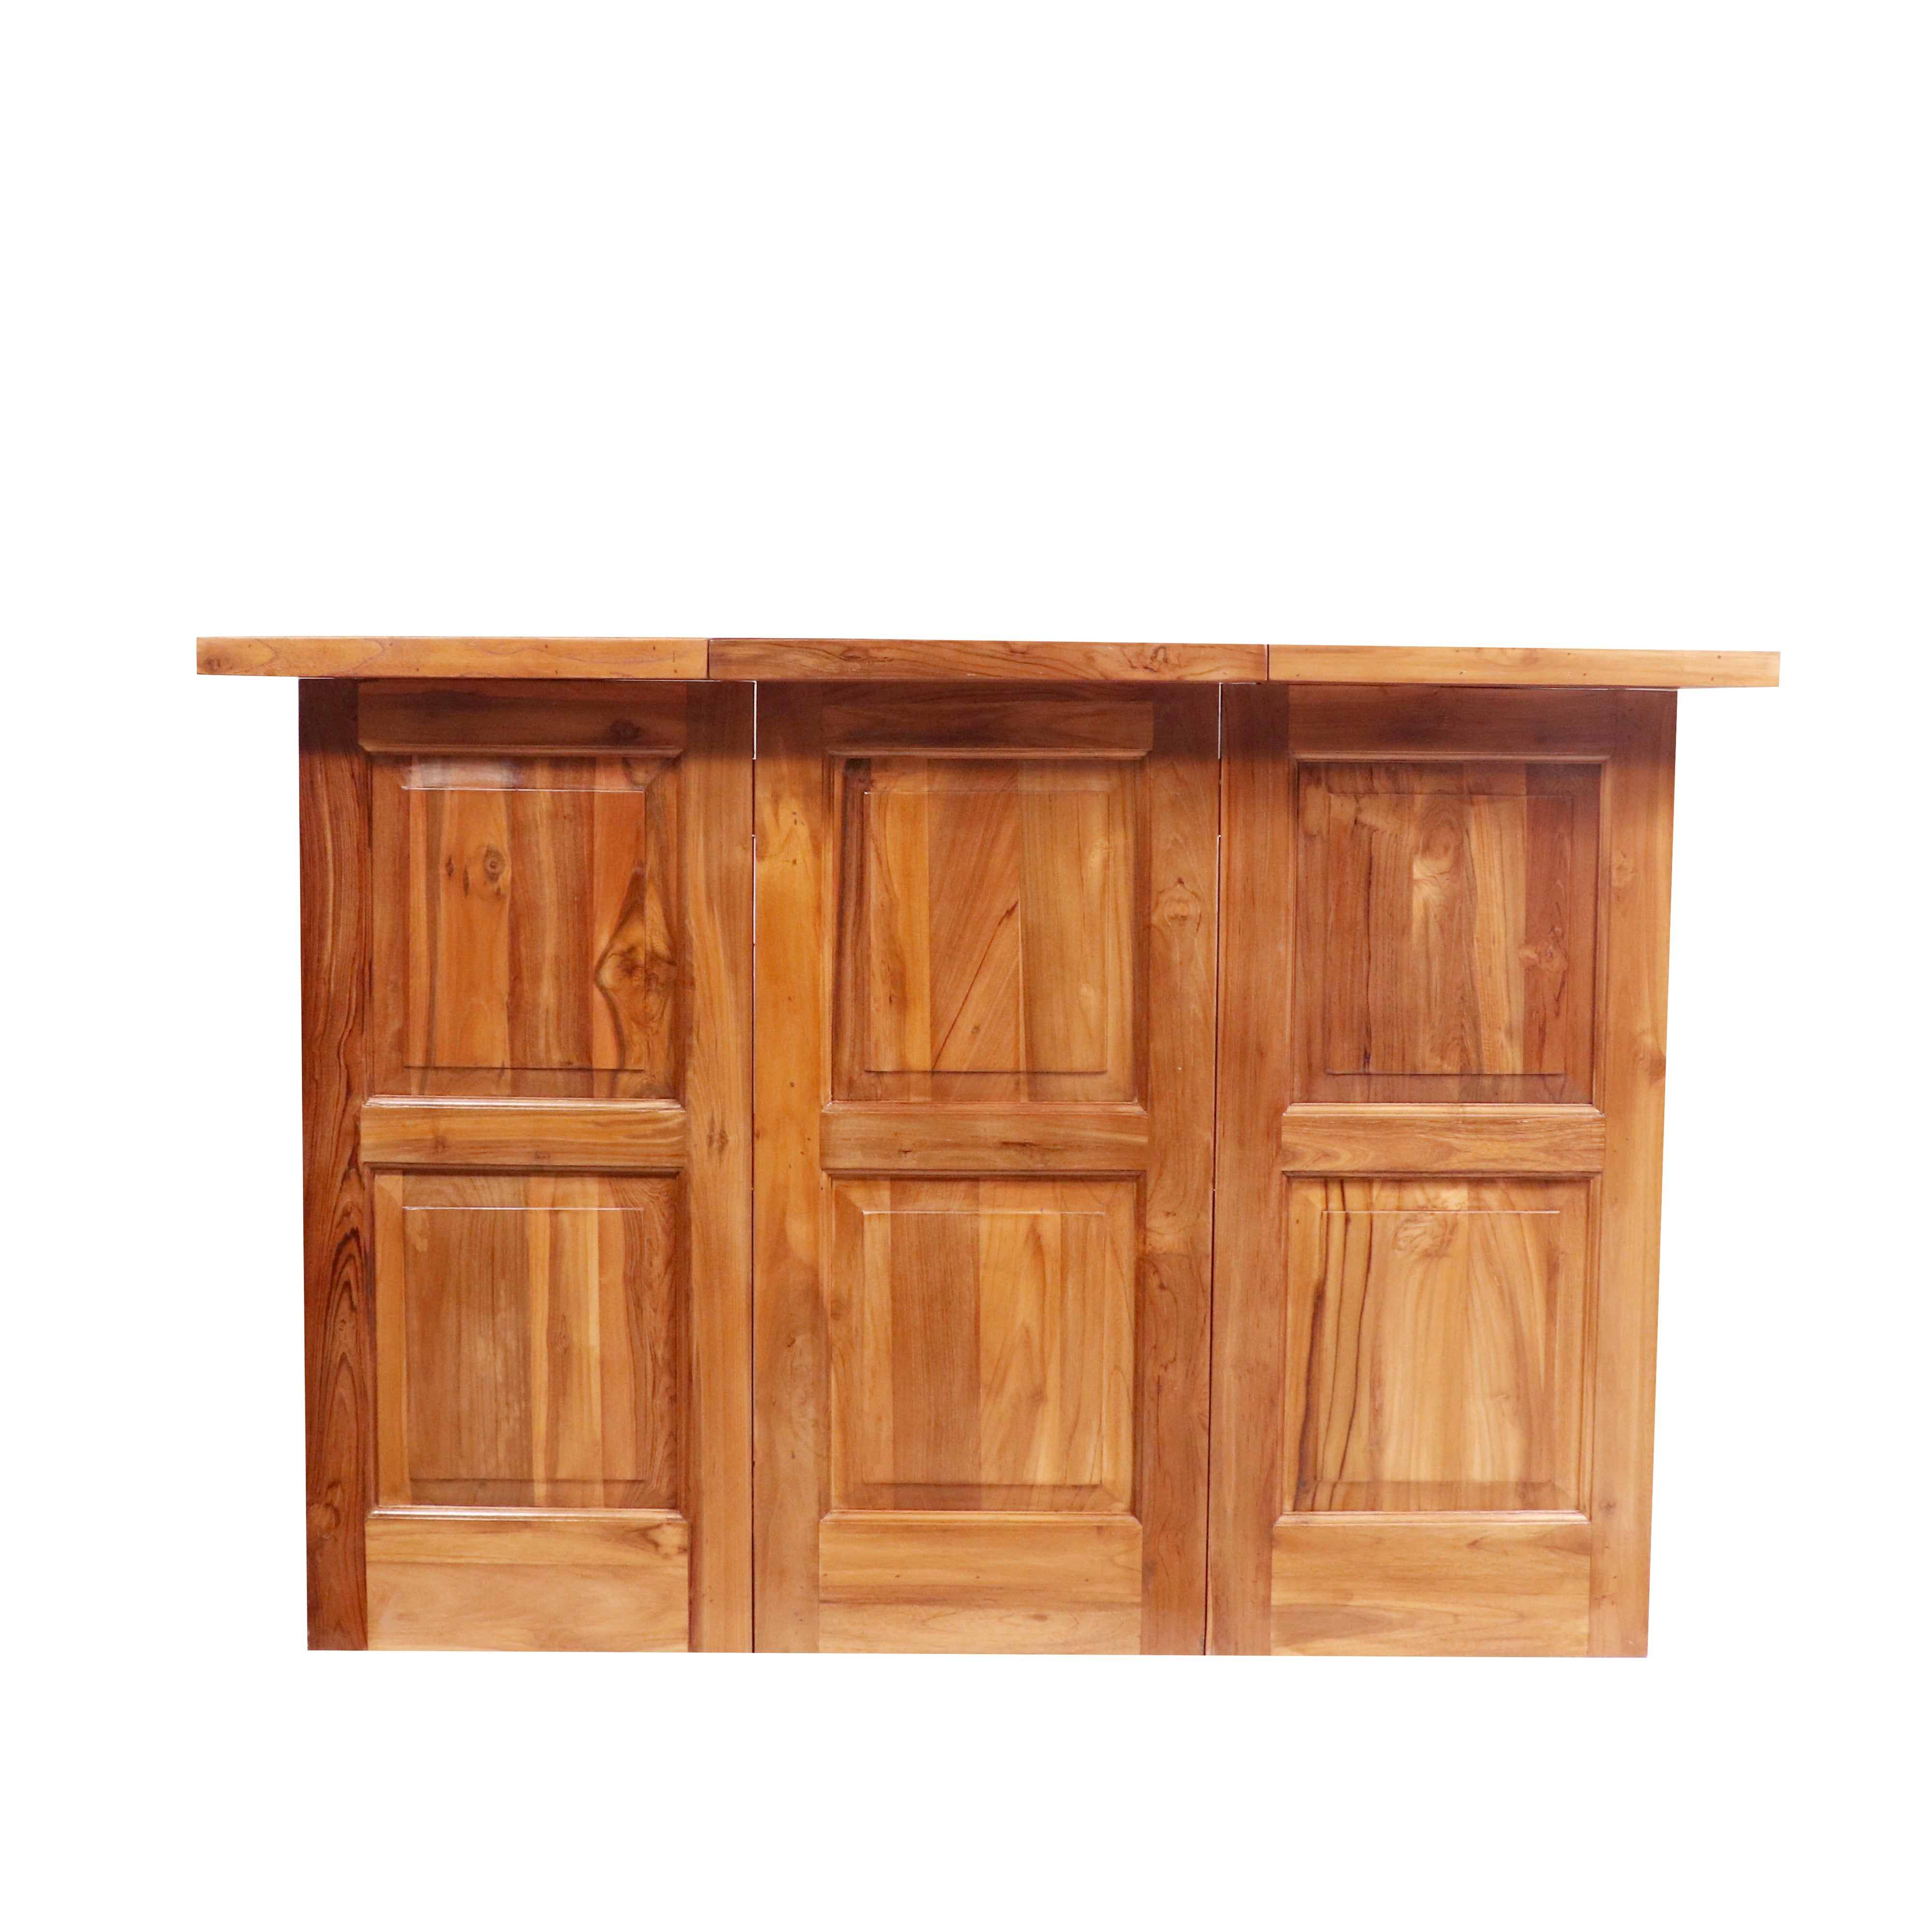 Montage Modern Designed Multi-Storage Handmade Wooden Kitchen Island for Home Kitchen Island